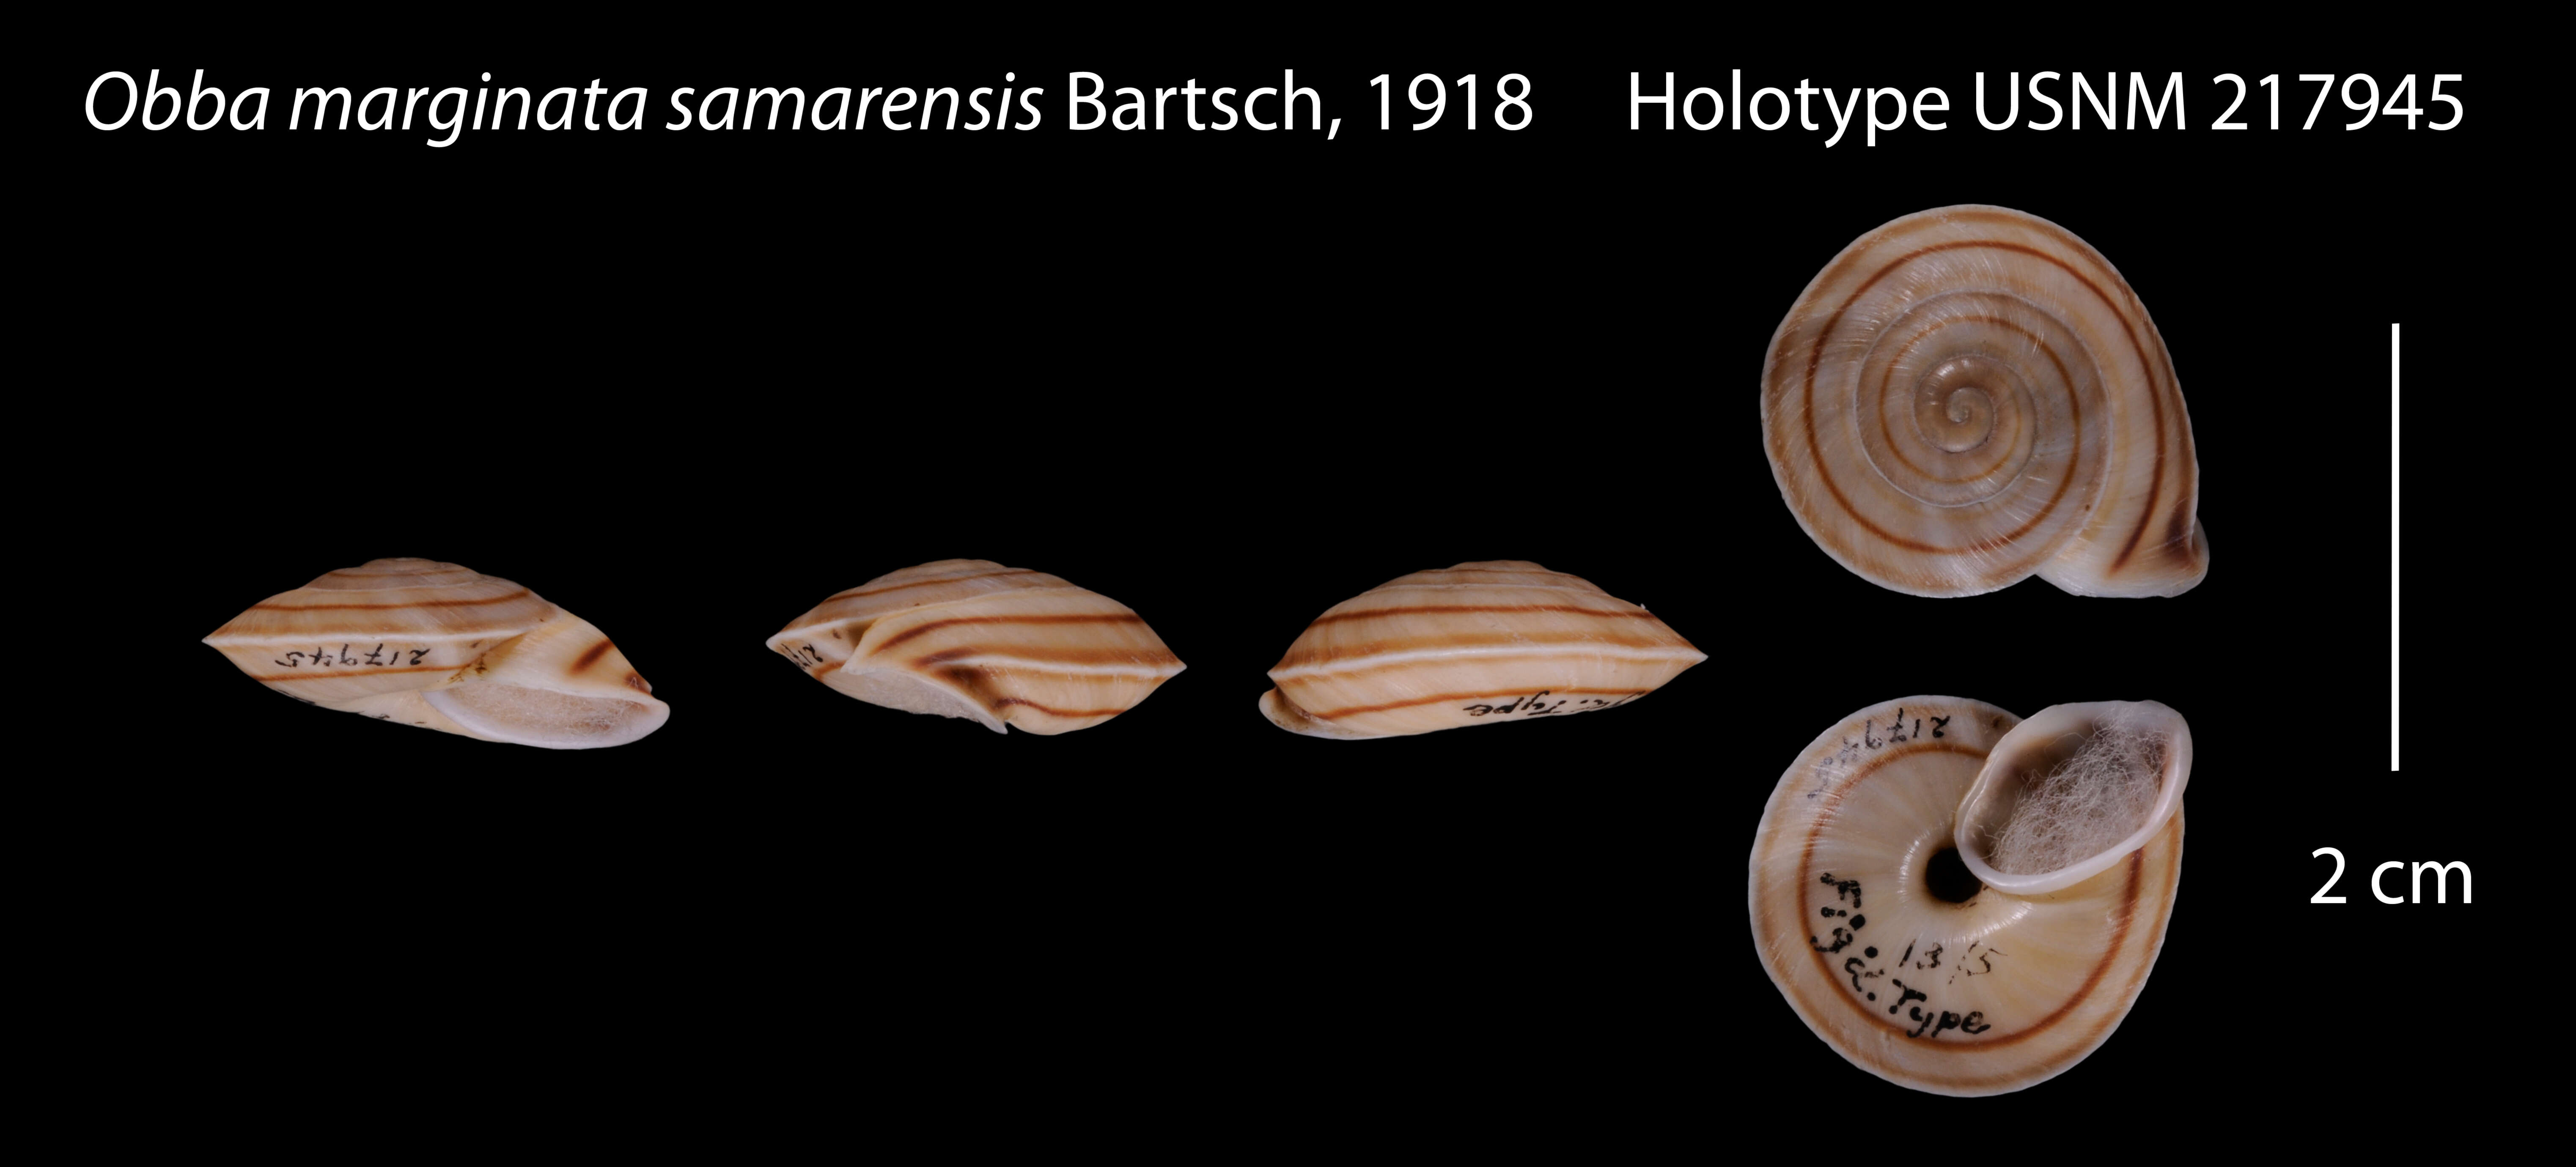 Image of Obba marginata samarensis Bartsch 1918